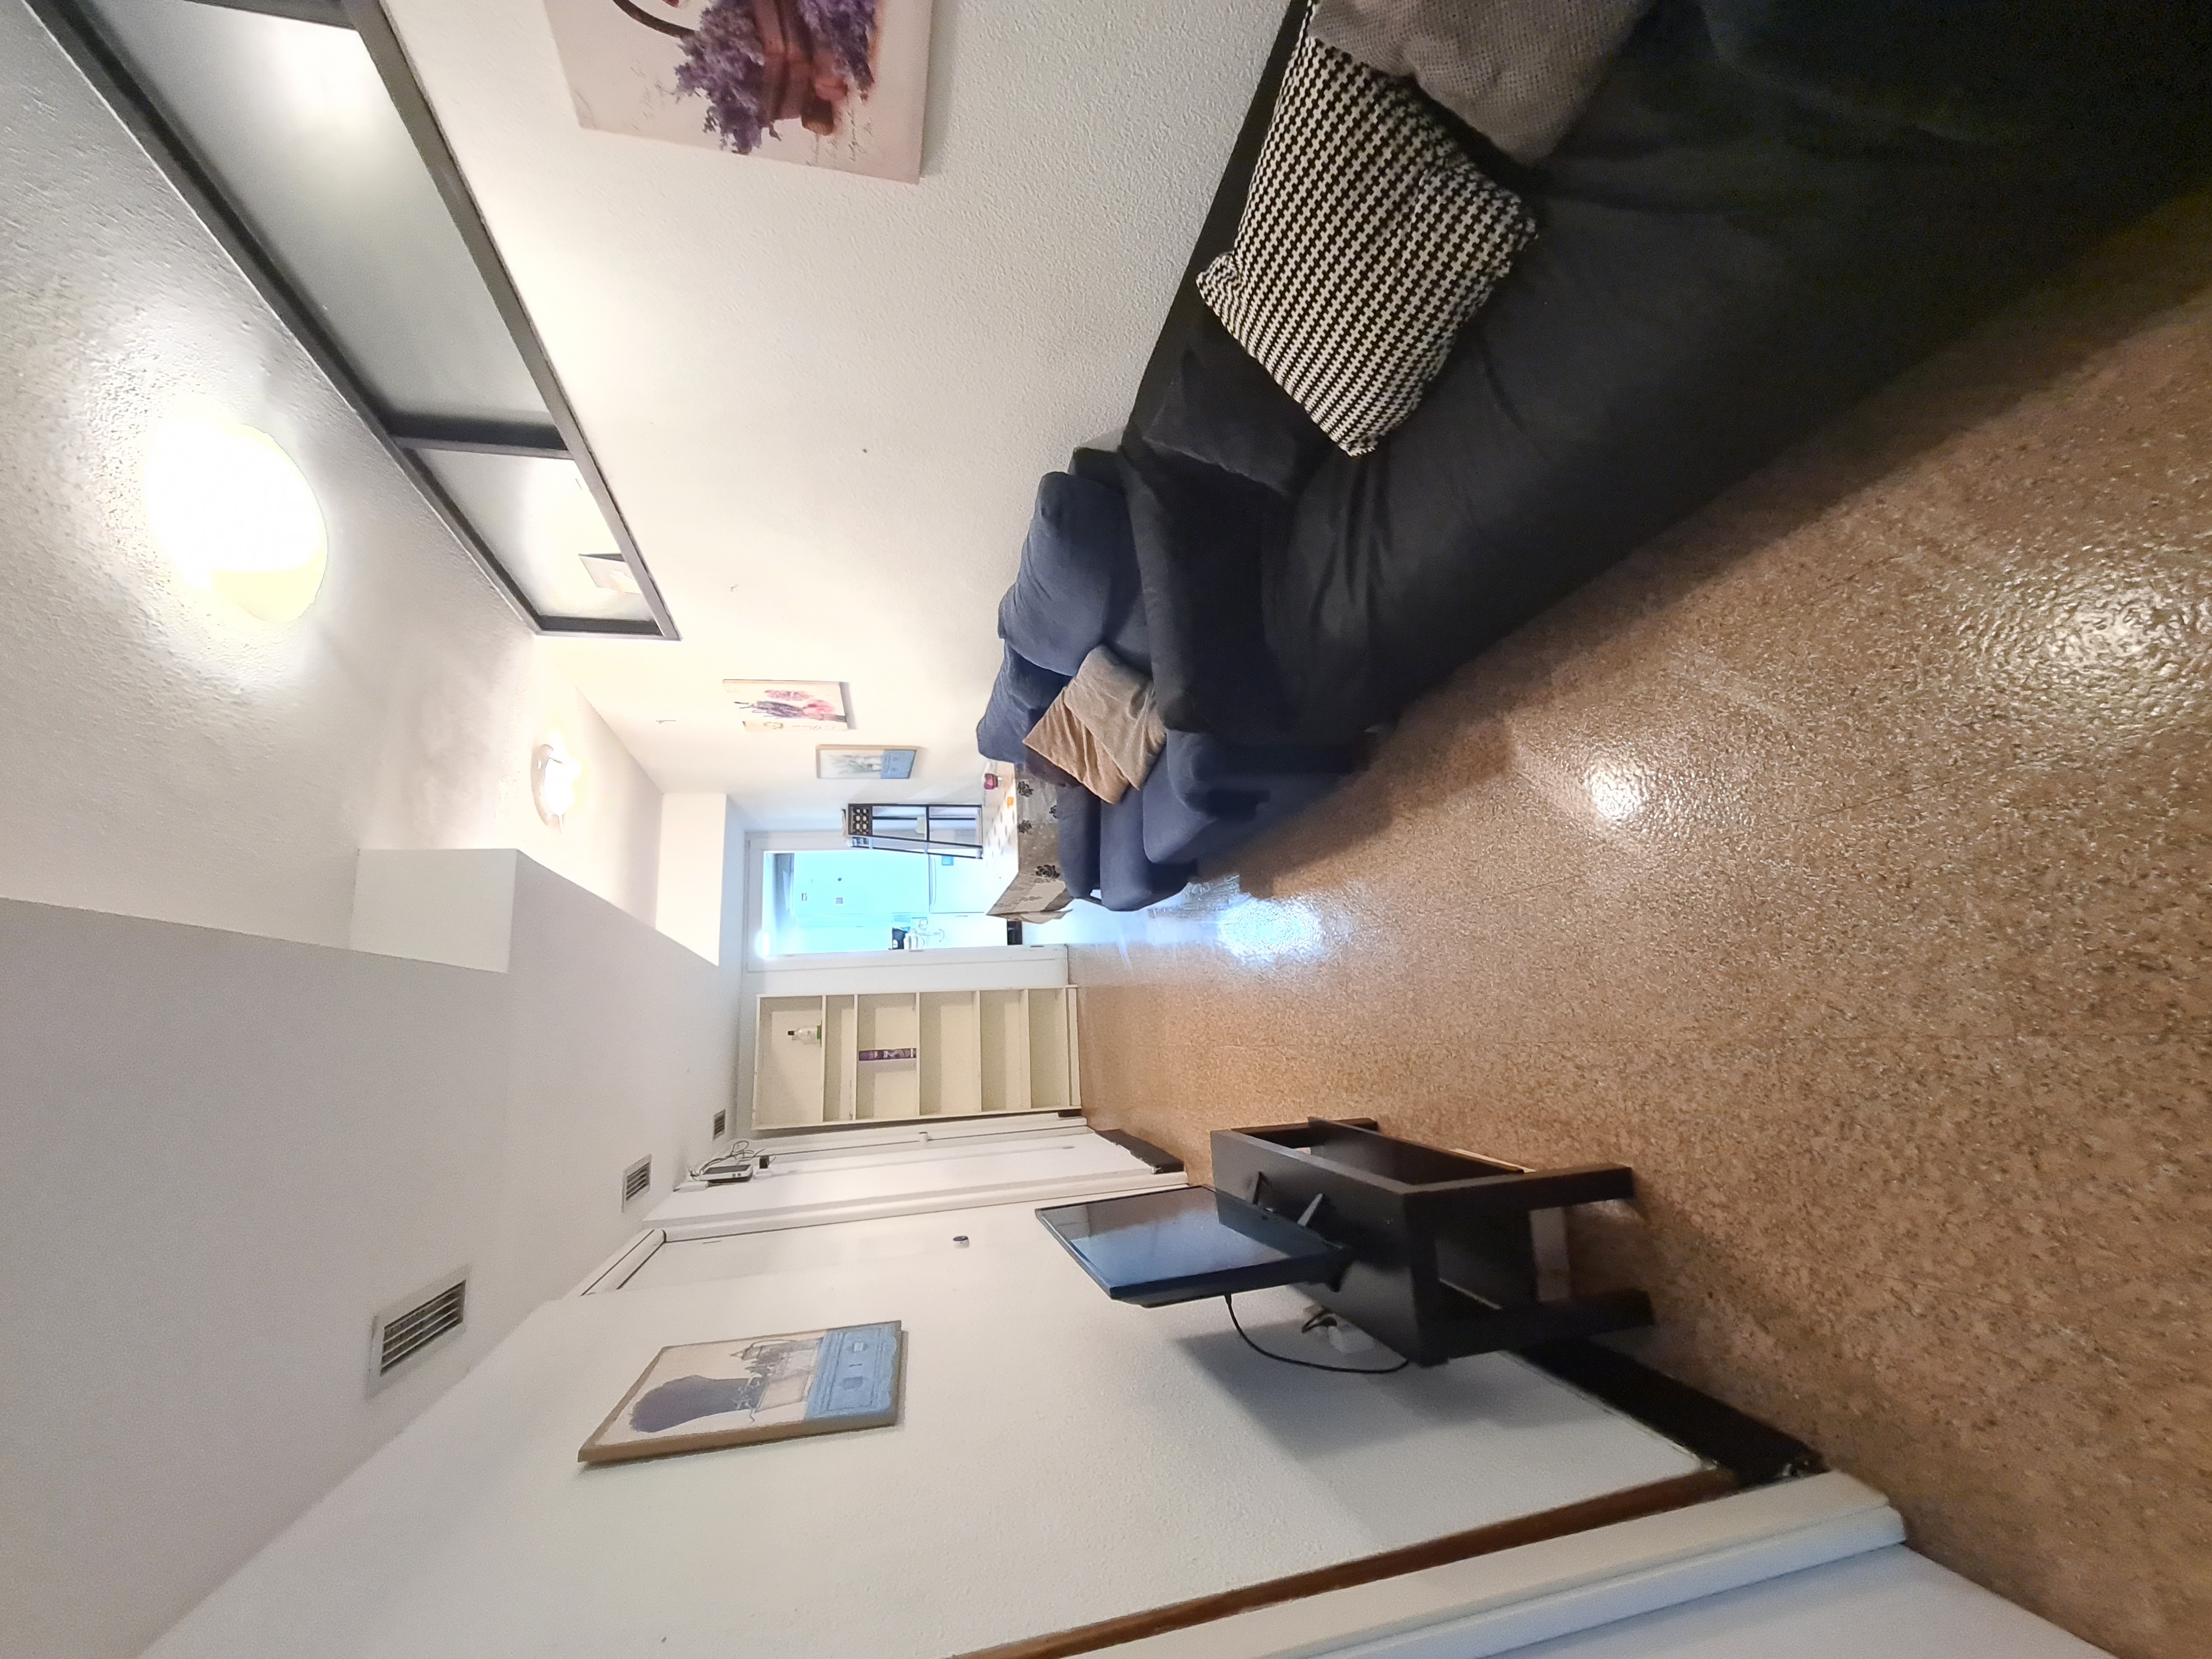 Habitaciones en piso compartido Madrid - ANA3